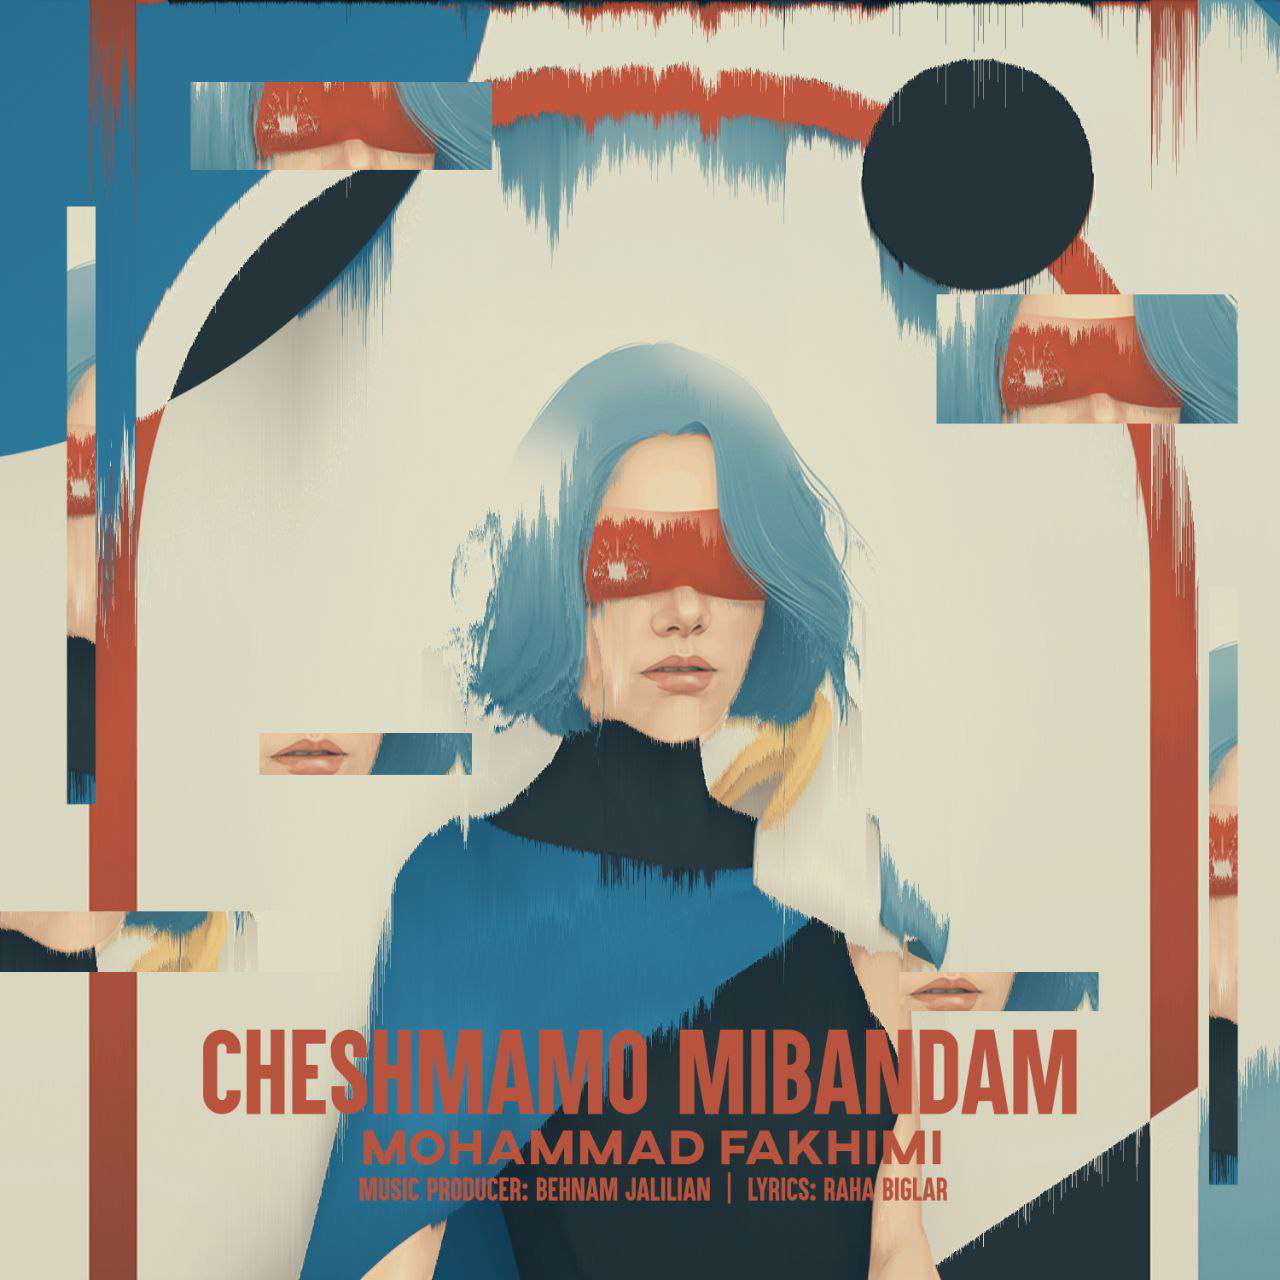 Mohammad Fakhimi – Cheshmamo Mibandam